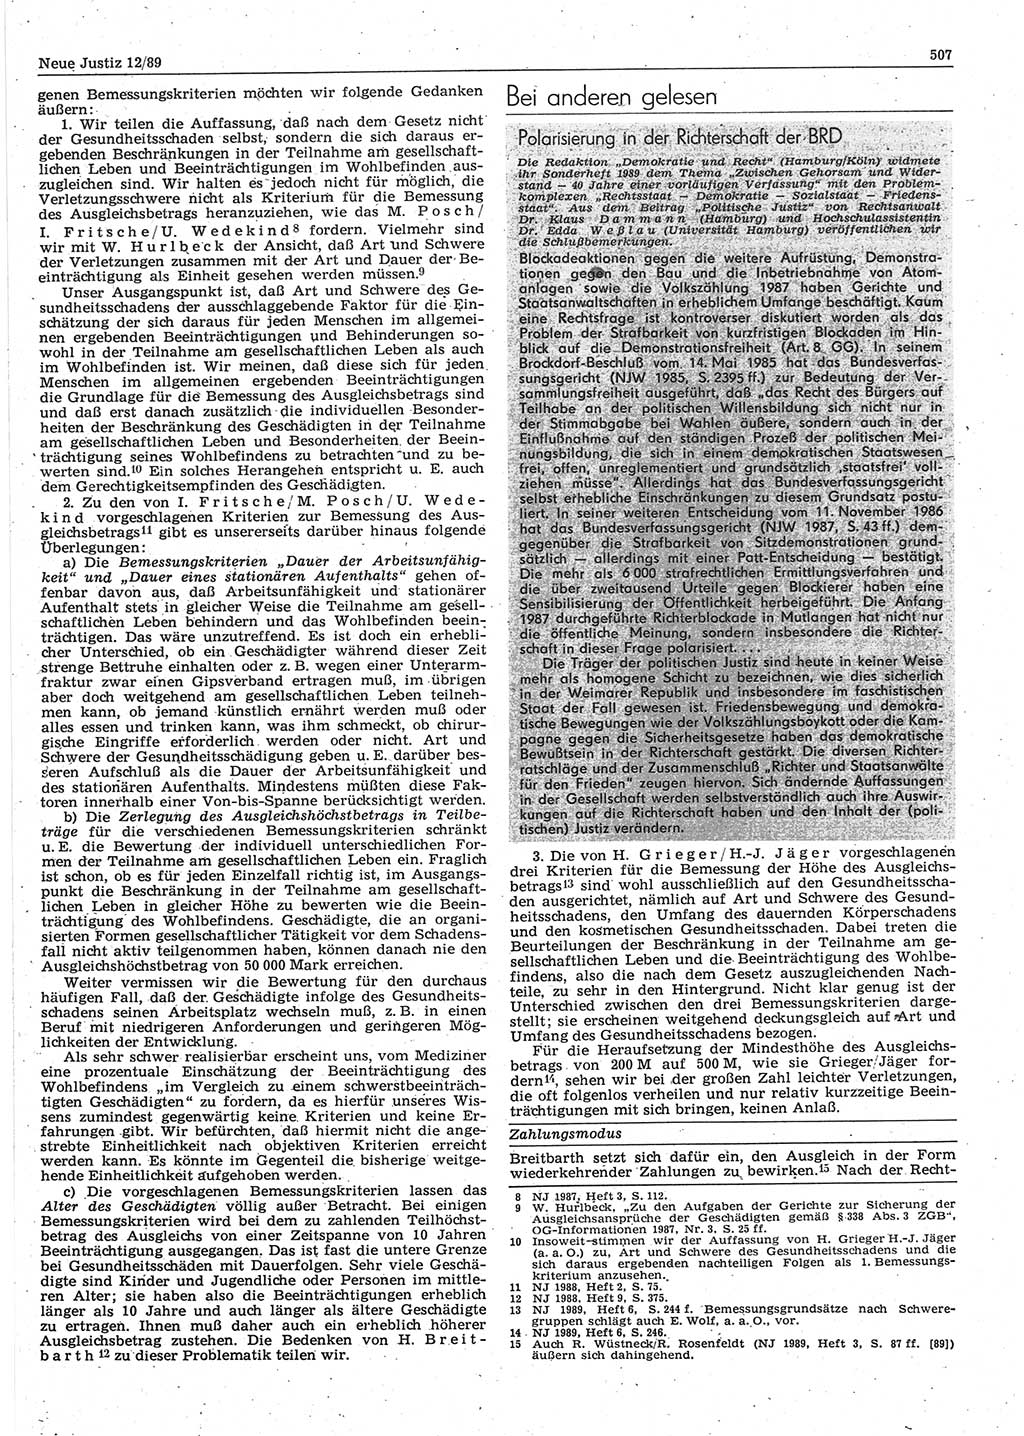 Neue Justiz (NJ), Zeitschrift für sozialistisches Recht und Gesetzlichkeit [Deutsche Demokratische Republik (DDR)], 43. Jahrgang 1989, Seite 507 (NJ DDR 1989, S. 507)